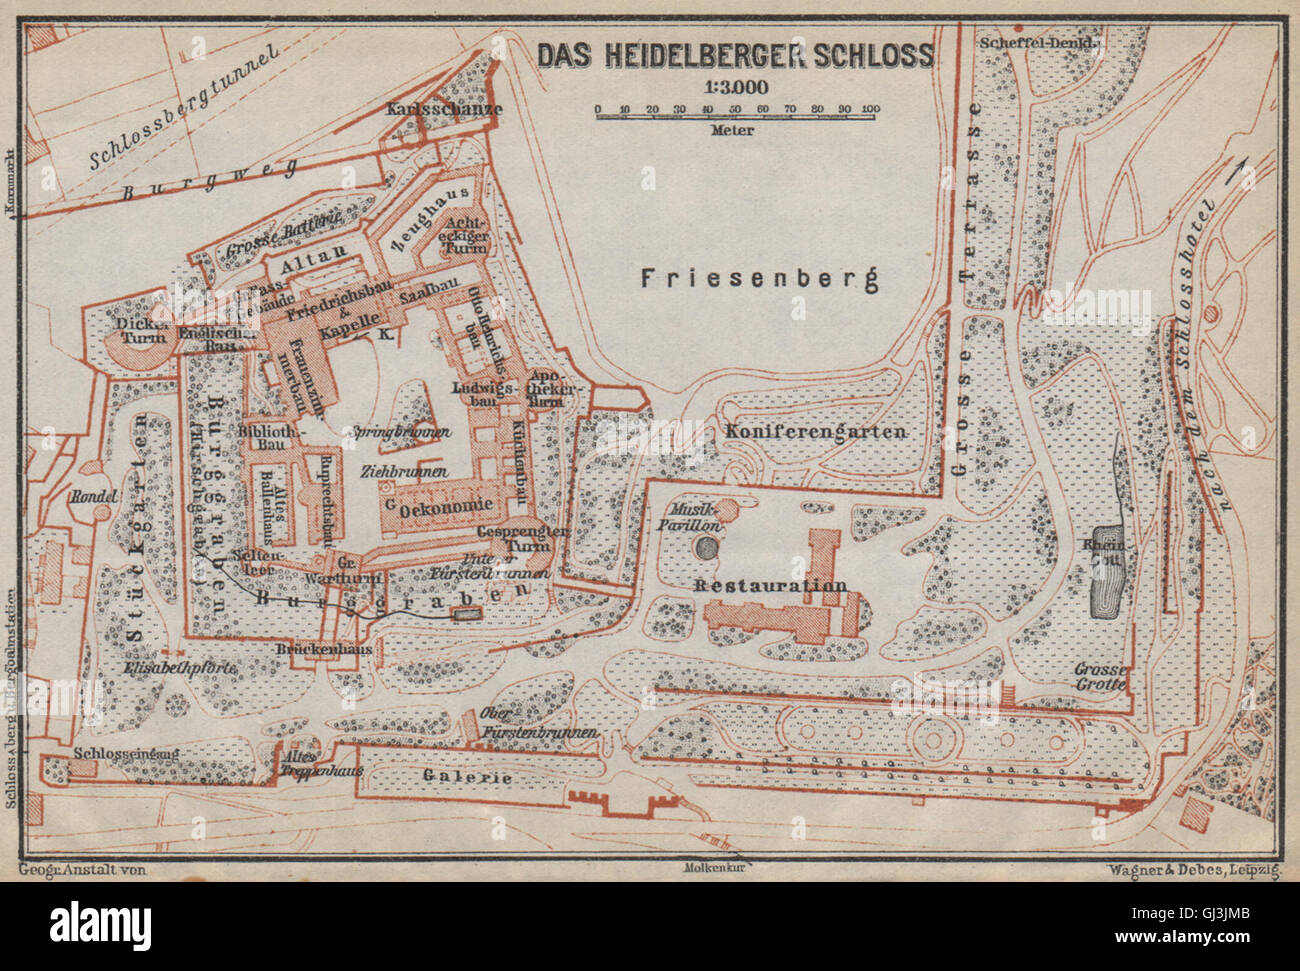 HEIDELBERGER SCHLOSS Castle. Plan au sol. Bade-wurtemberg karte, 1926 map Banque D'Images